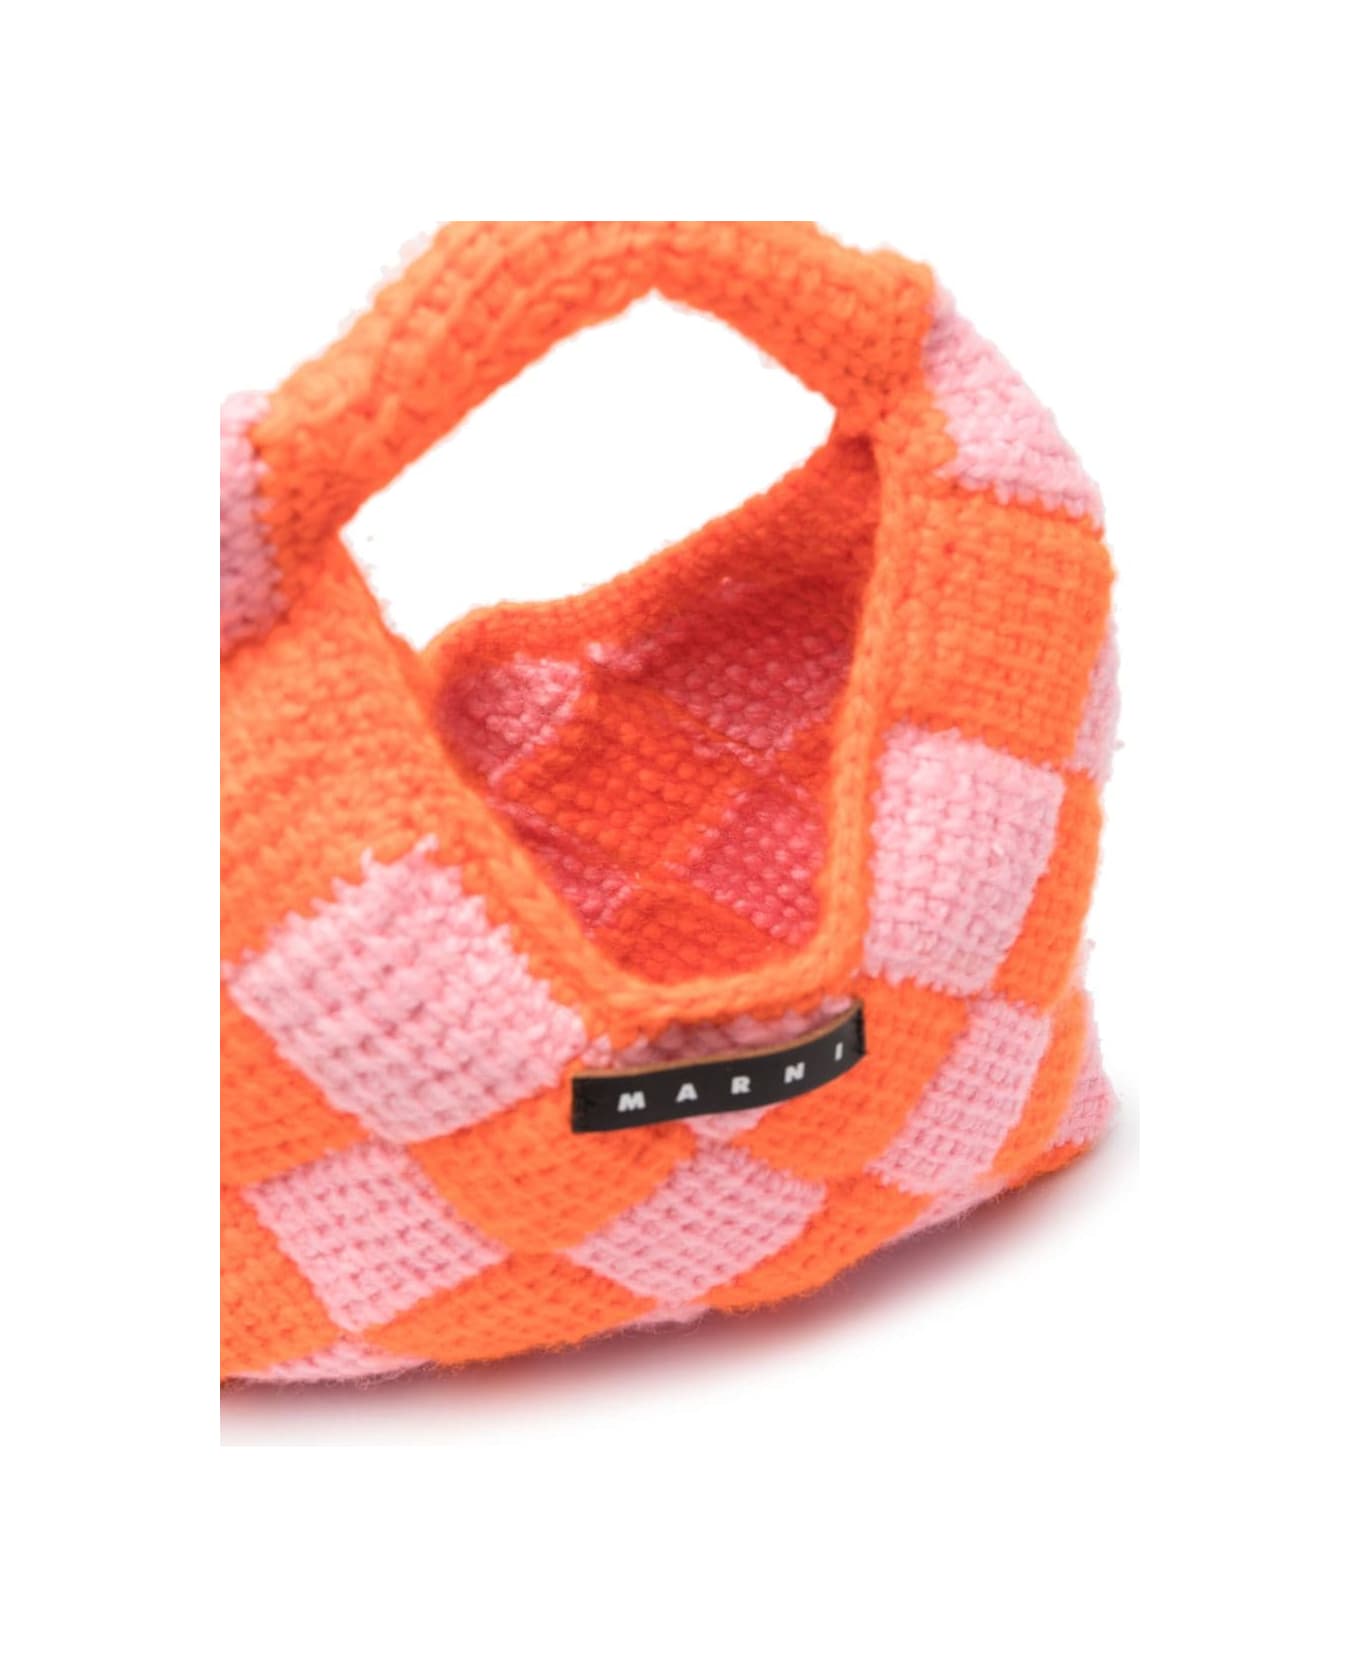 Marni Mw84f Diamond Crochet - Multicolor